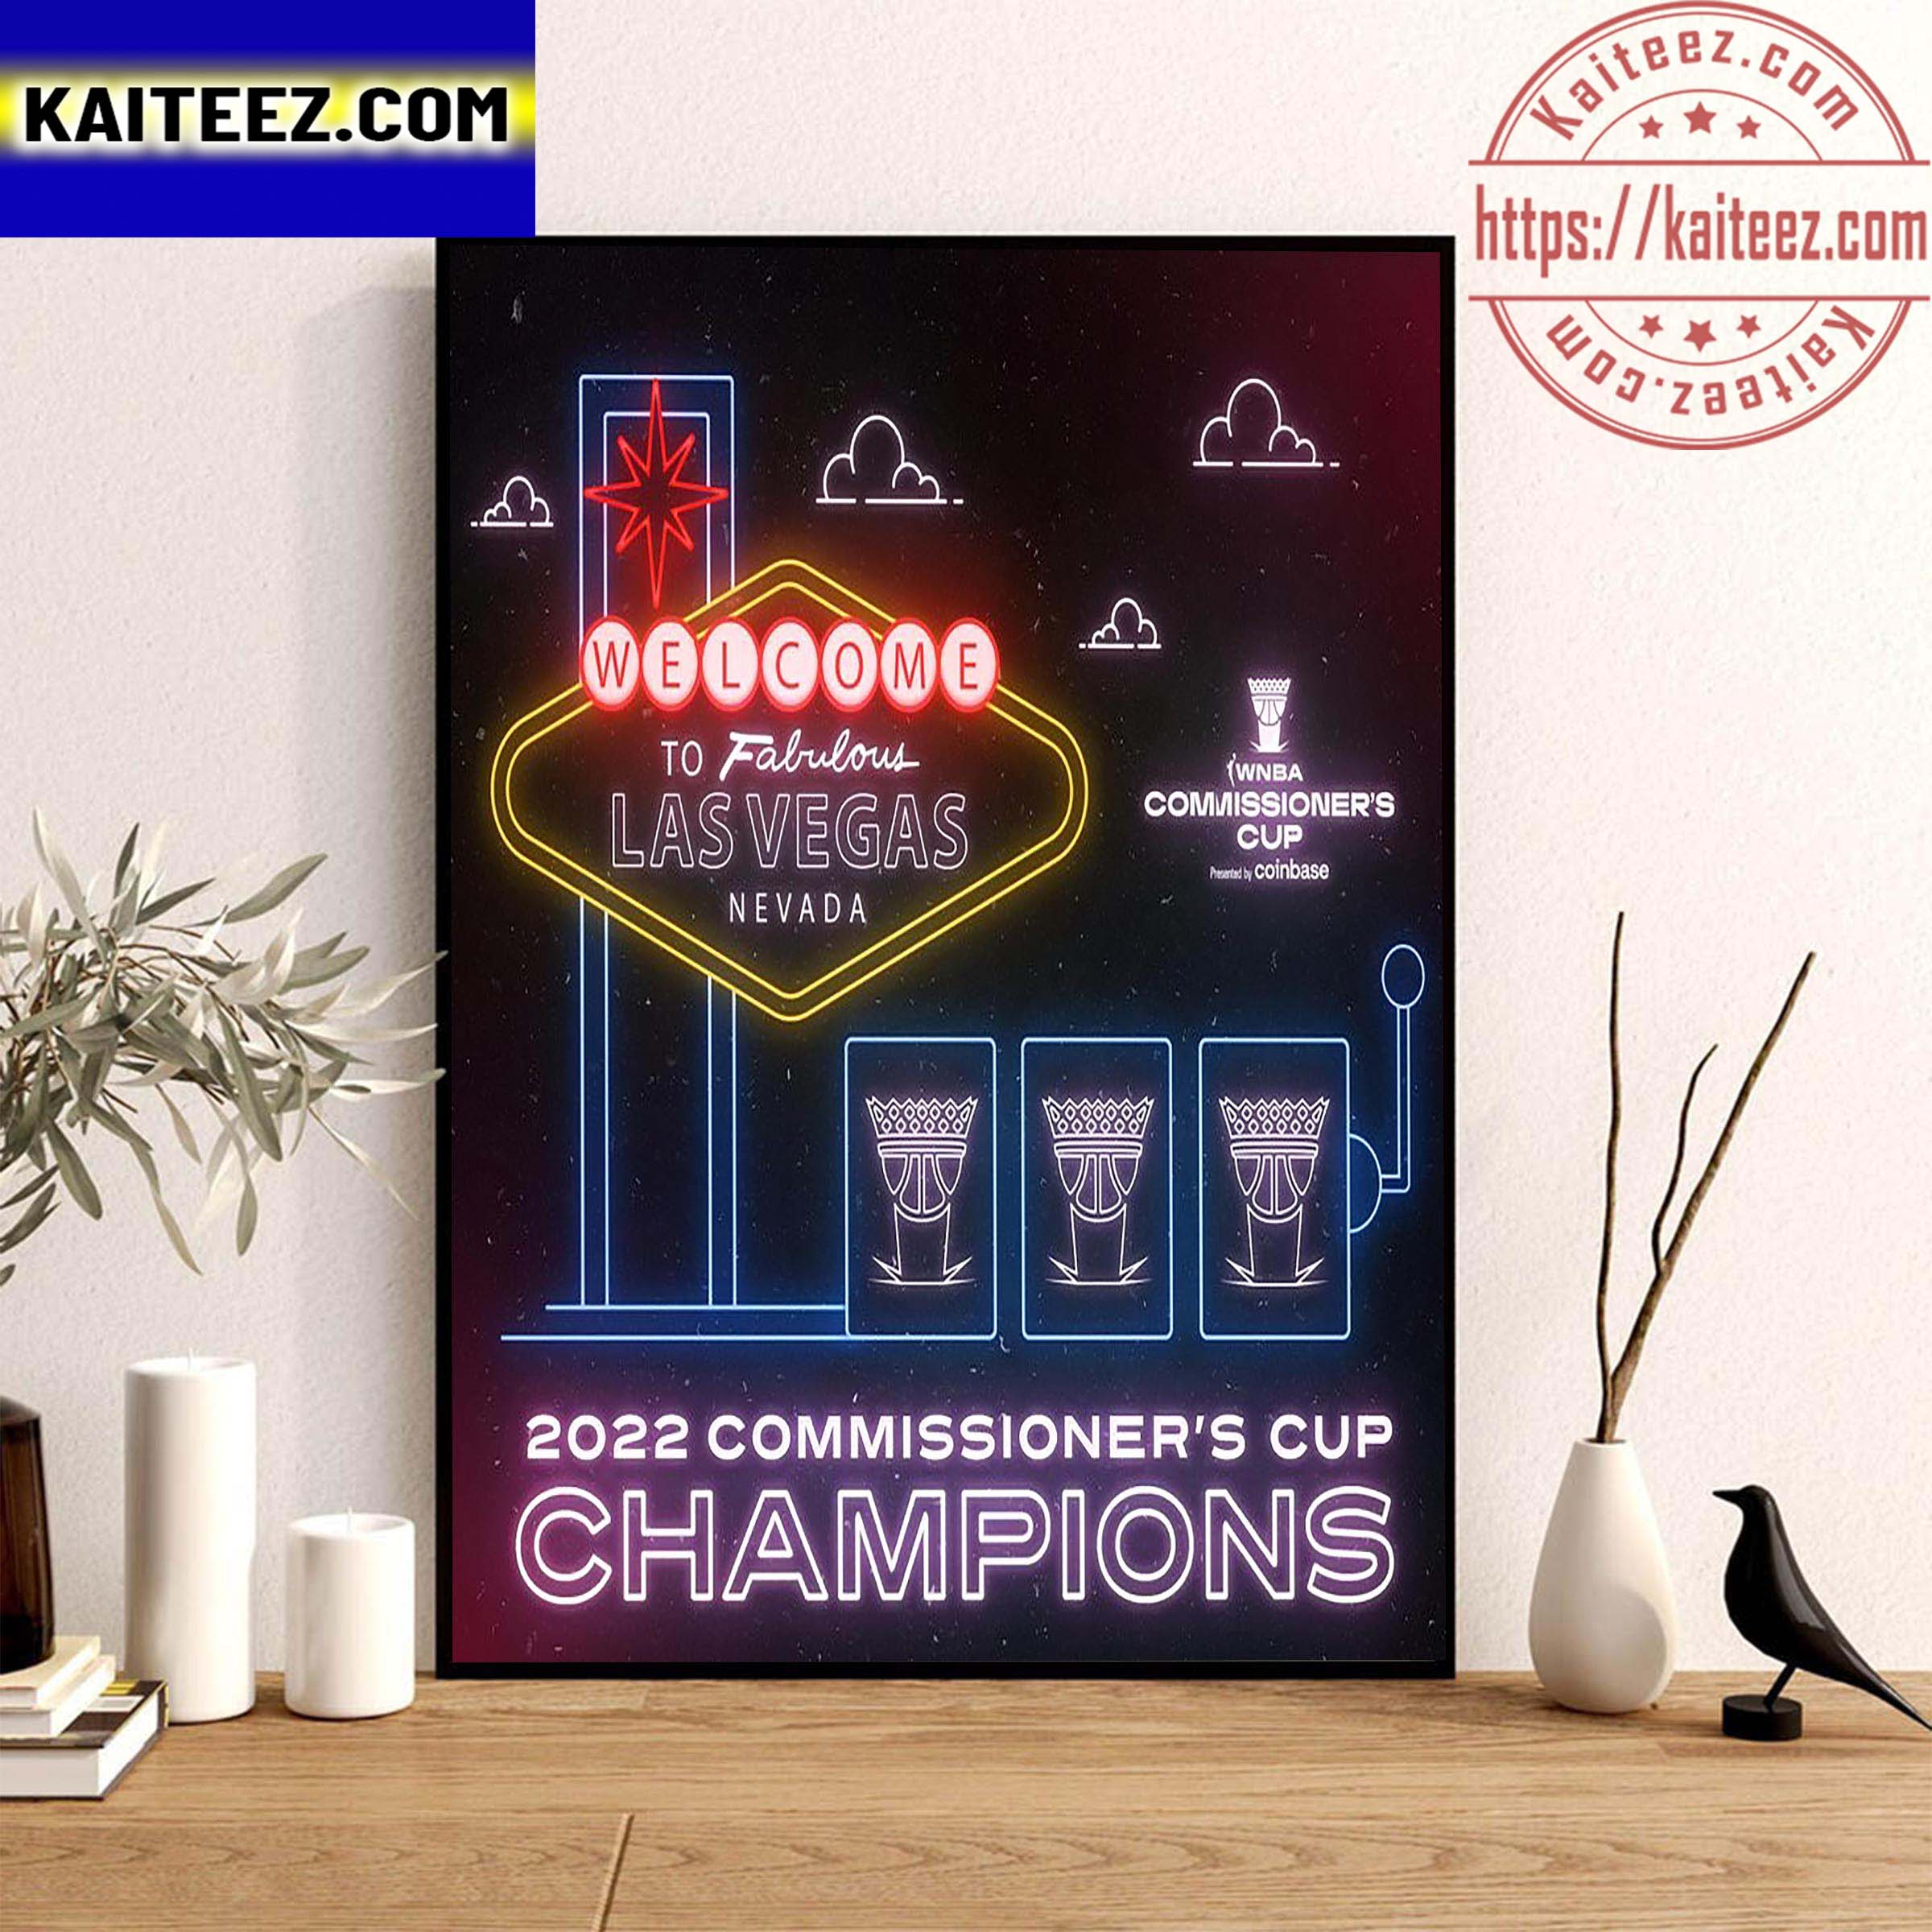 Las Vegas Aces Champs WNBA 2022 Commissioner's Cup Champions Art Decor Poster Canvas